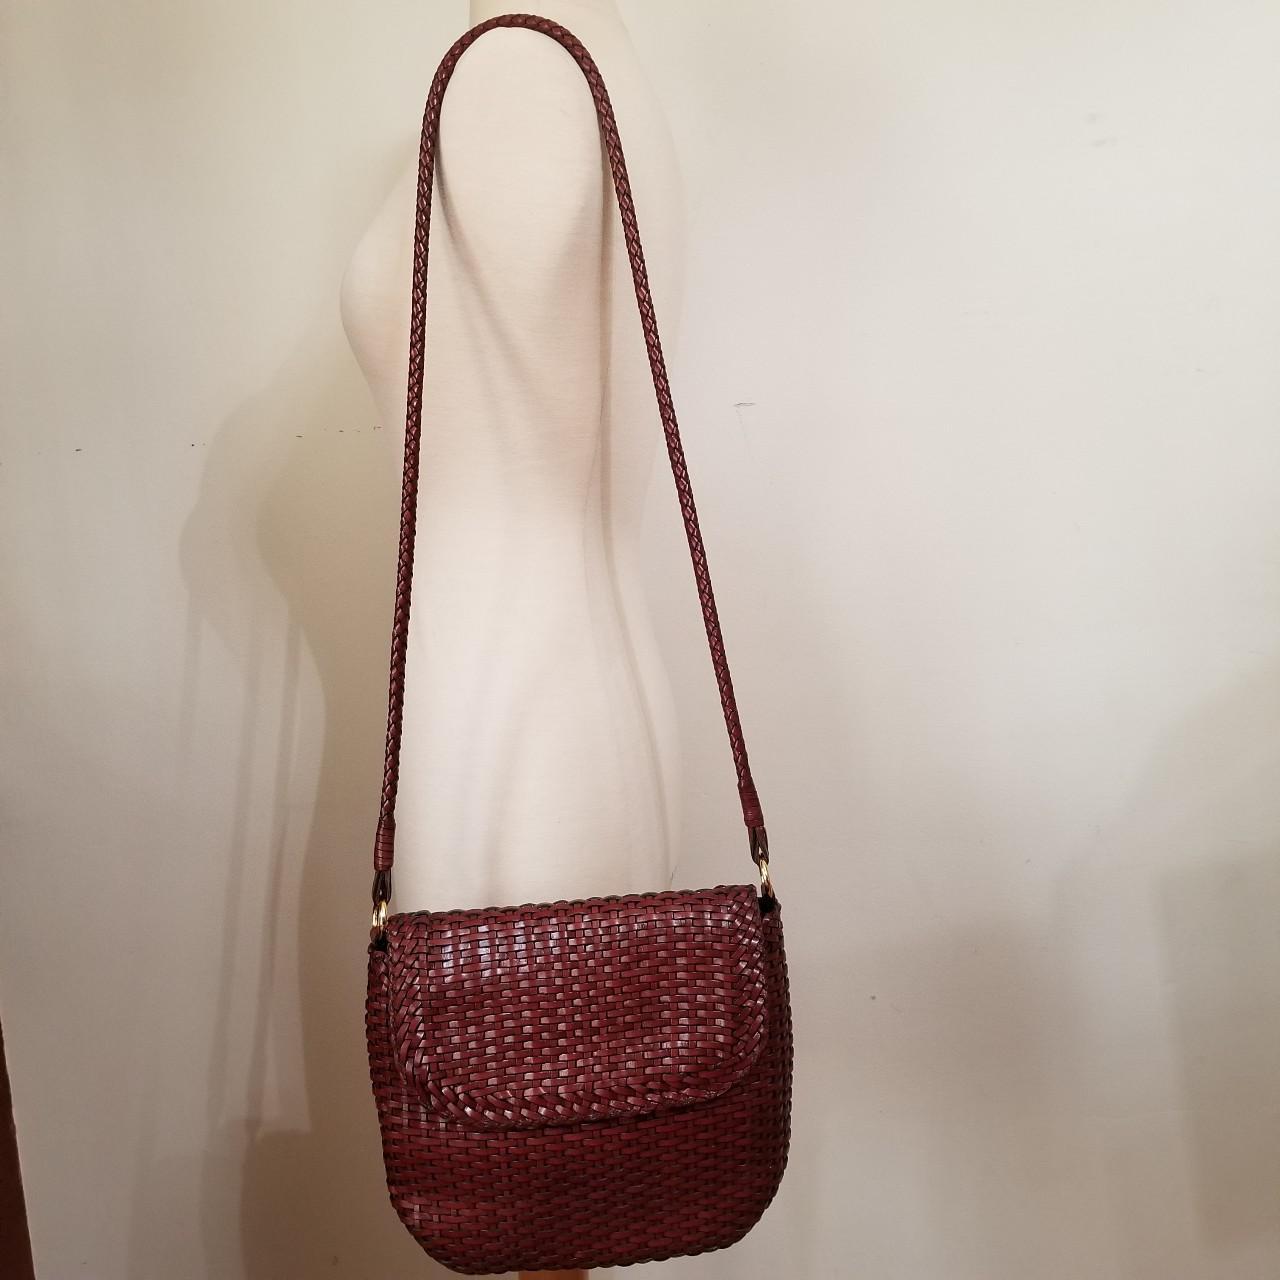 The IT bag 100% genuine basket weave leather bag... - Depop